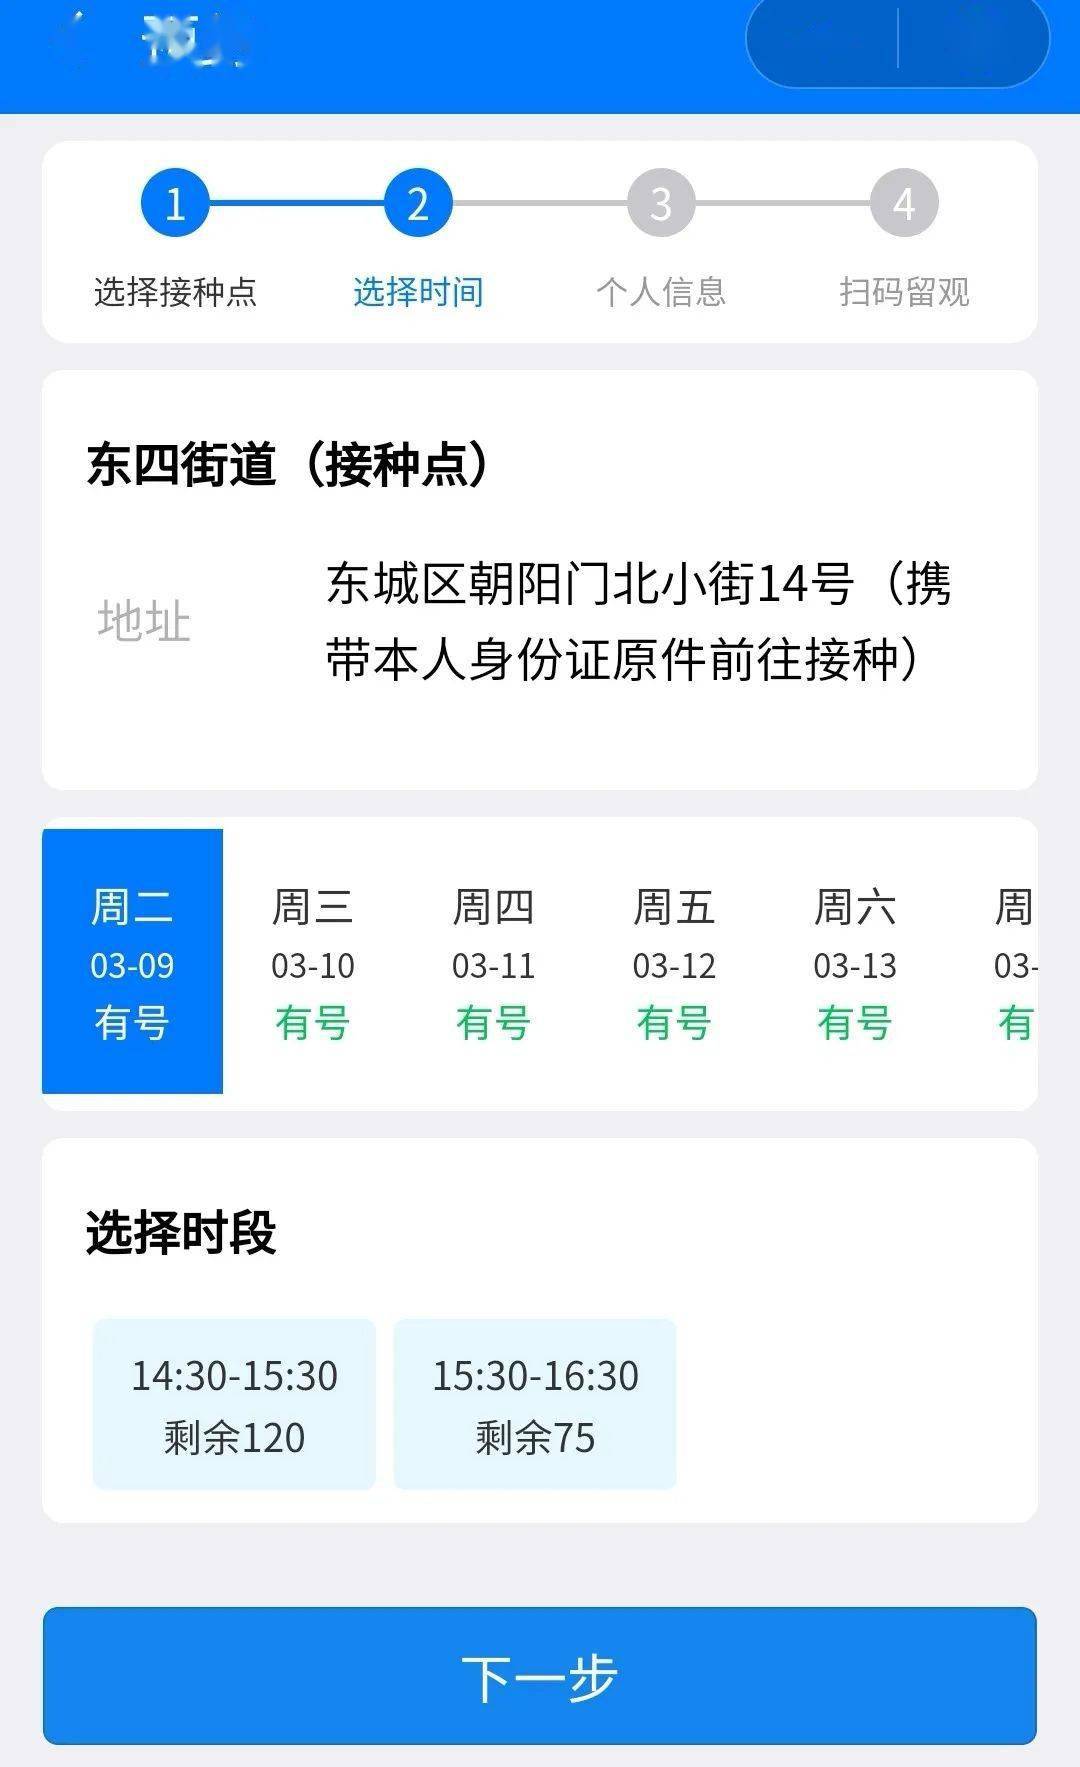 与健康宝关联北京东城新冠疫苗接种线上统一预约平台上线可提前6天